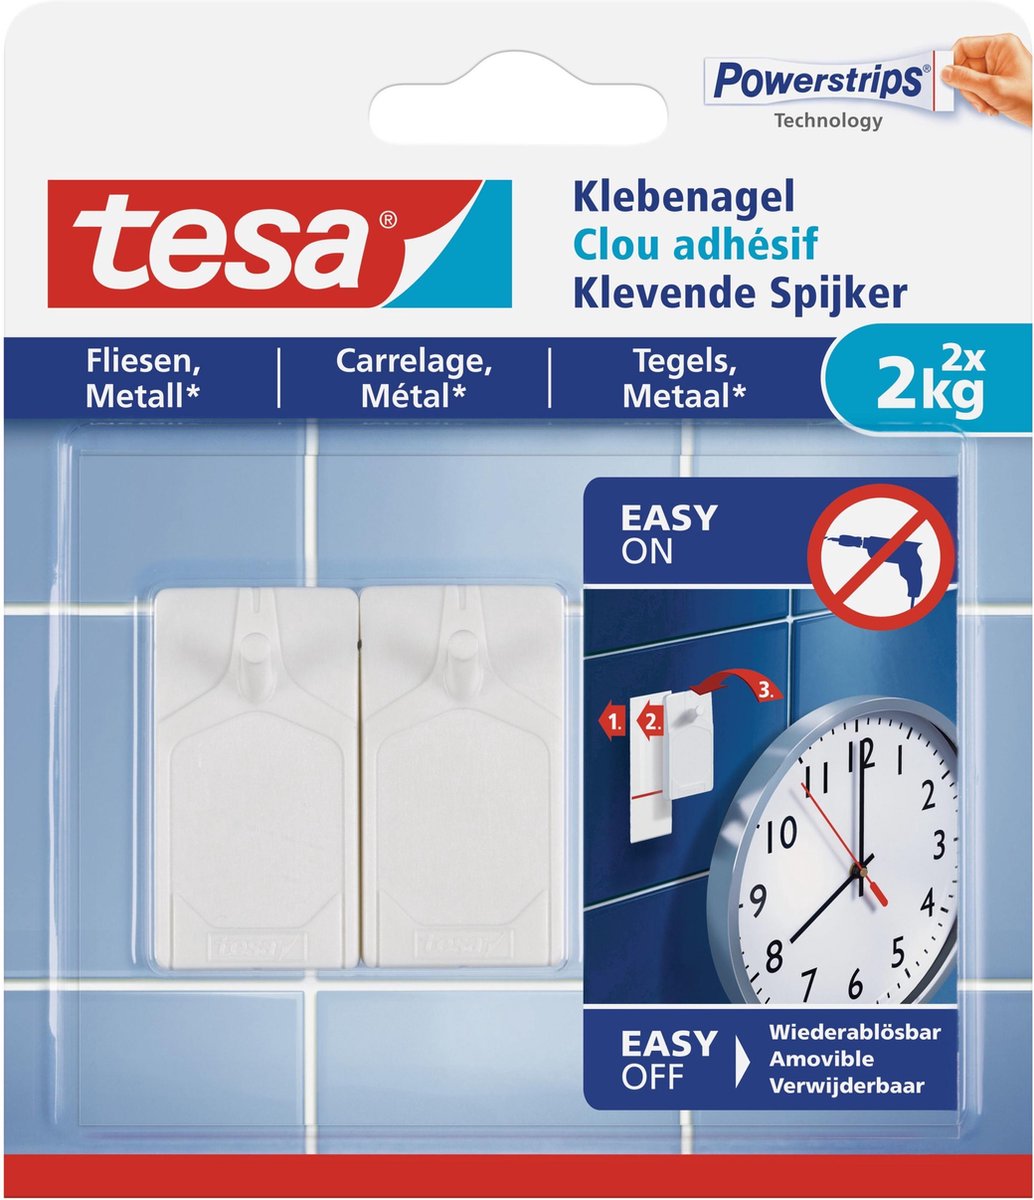 Tesa powerstrips klevende spijker voor tegels & metaal 2 kg. - 2 stuks - Tesa